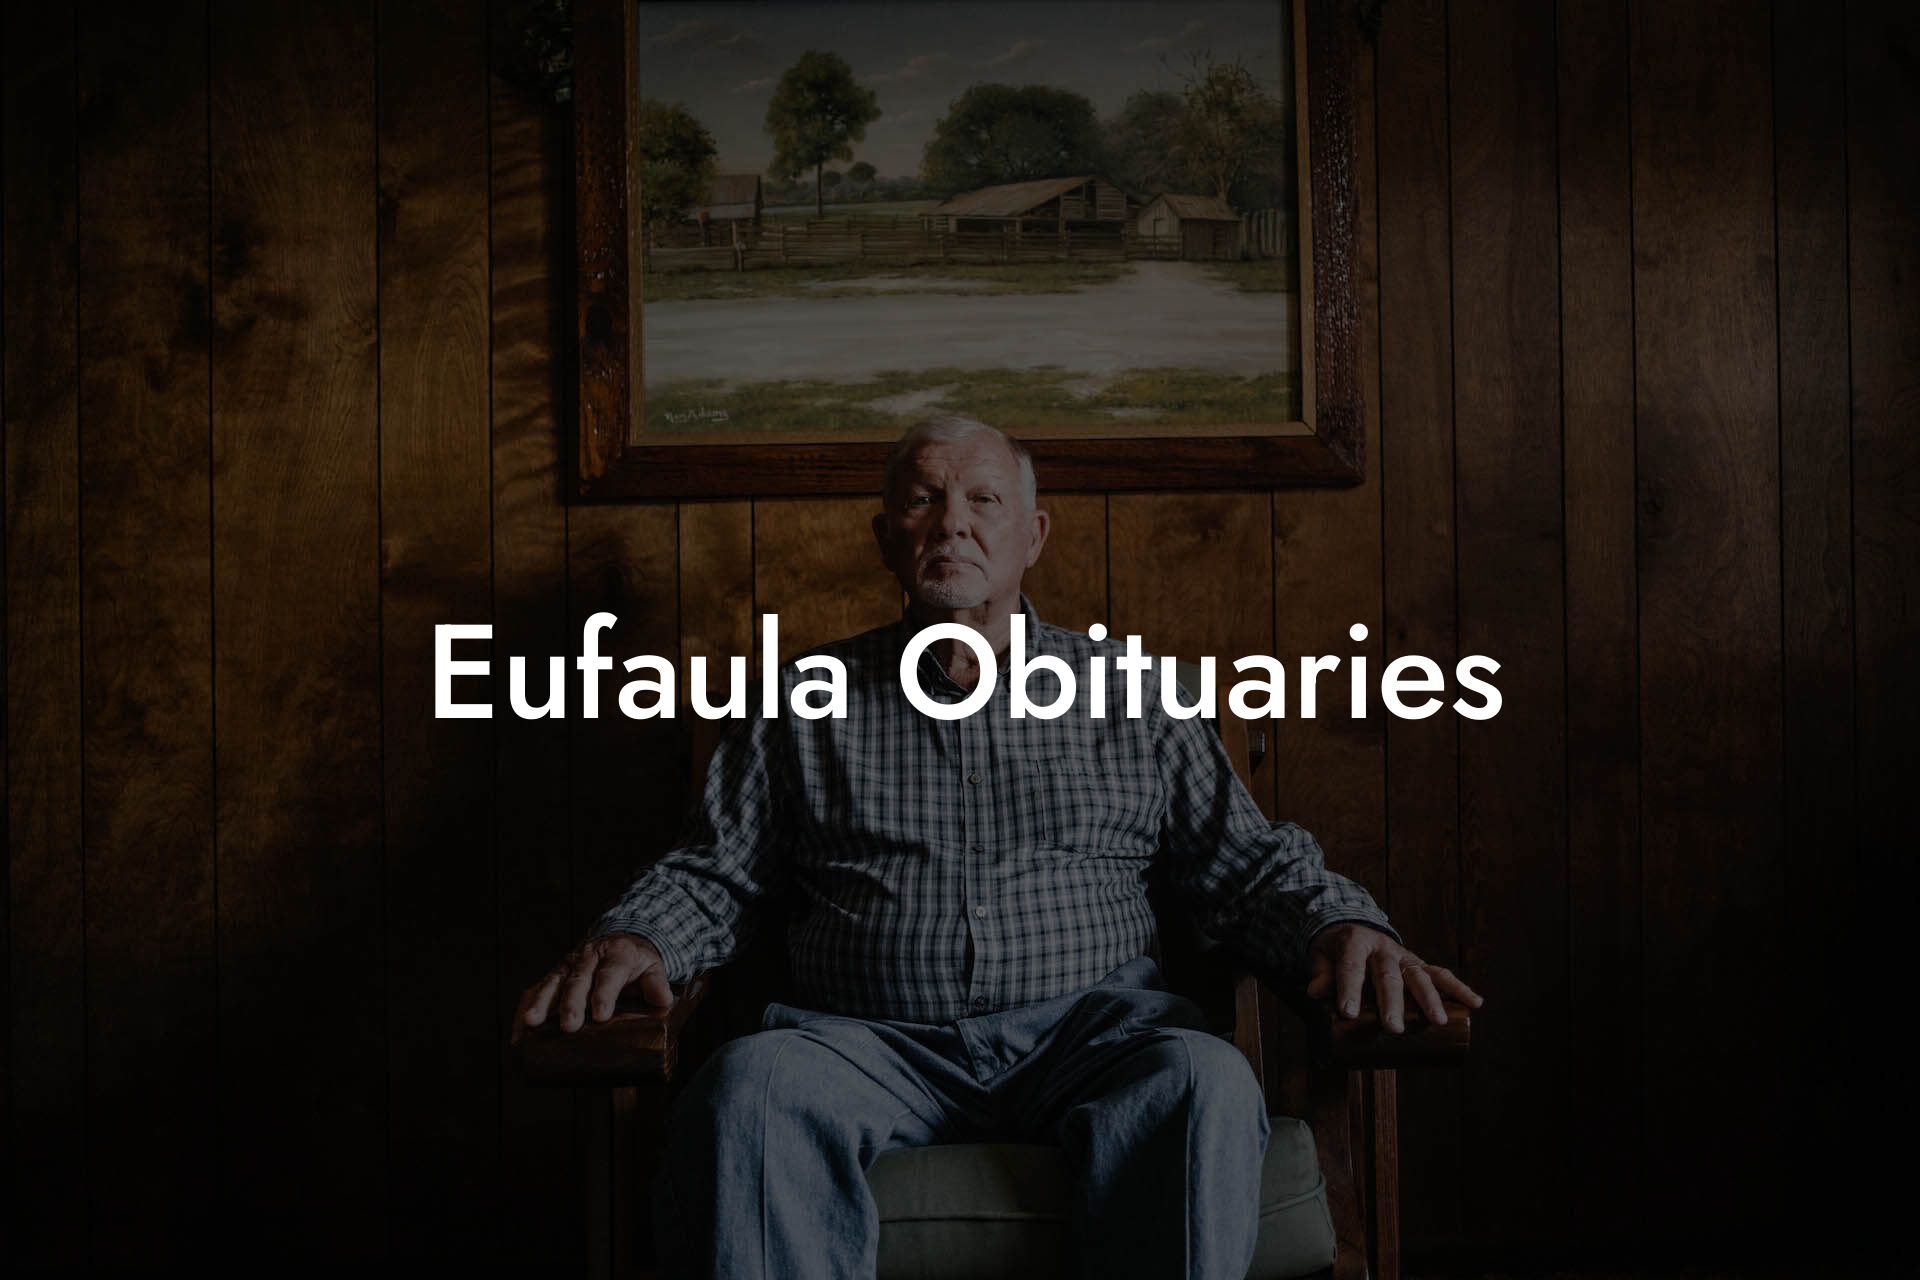 Eufaula Obituaries